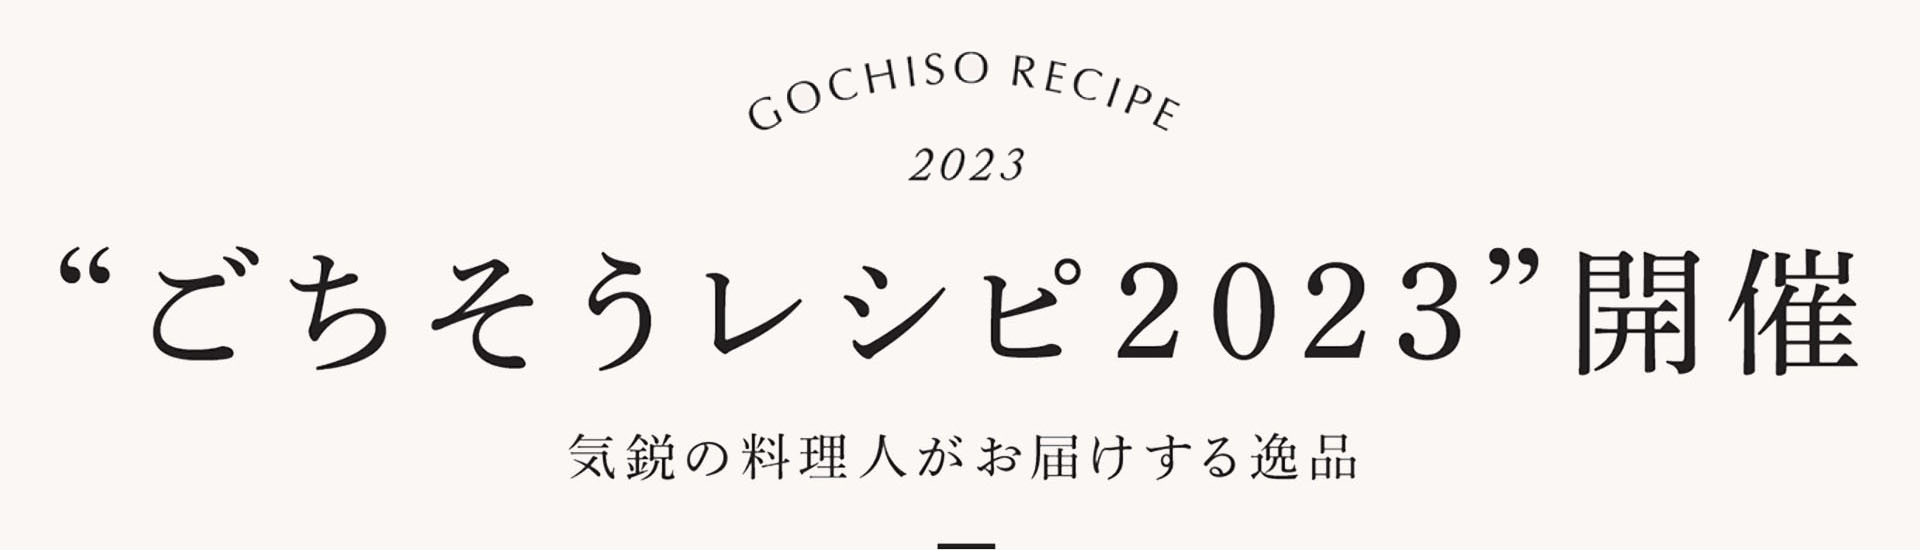 GOCHISO RECEPI 2023 “ごちそうレシピ2023”開催 気鋭の料理人がお届けする逸品